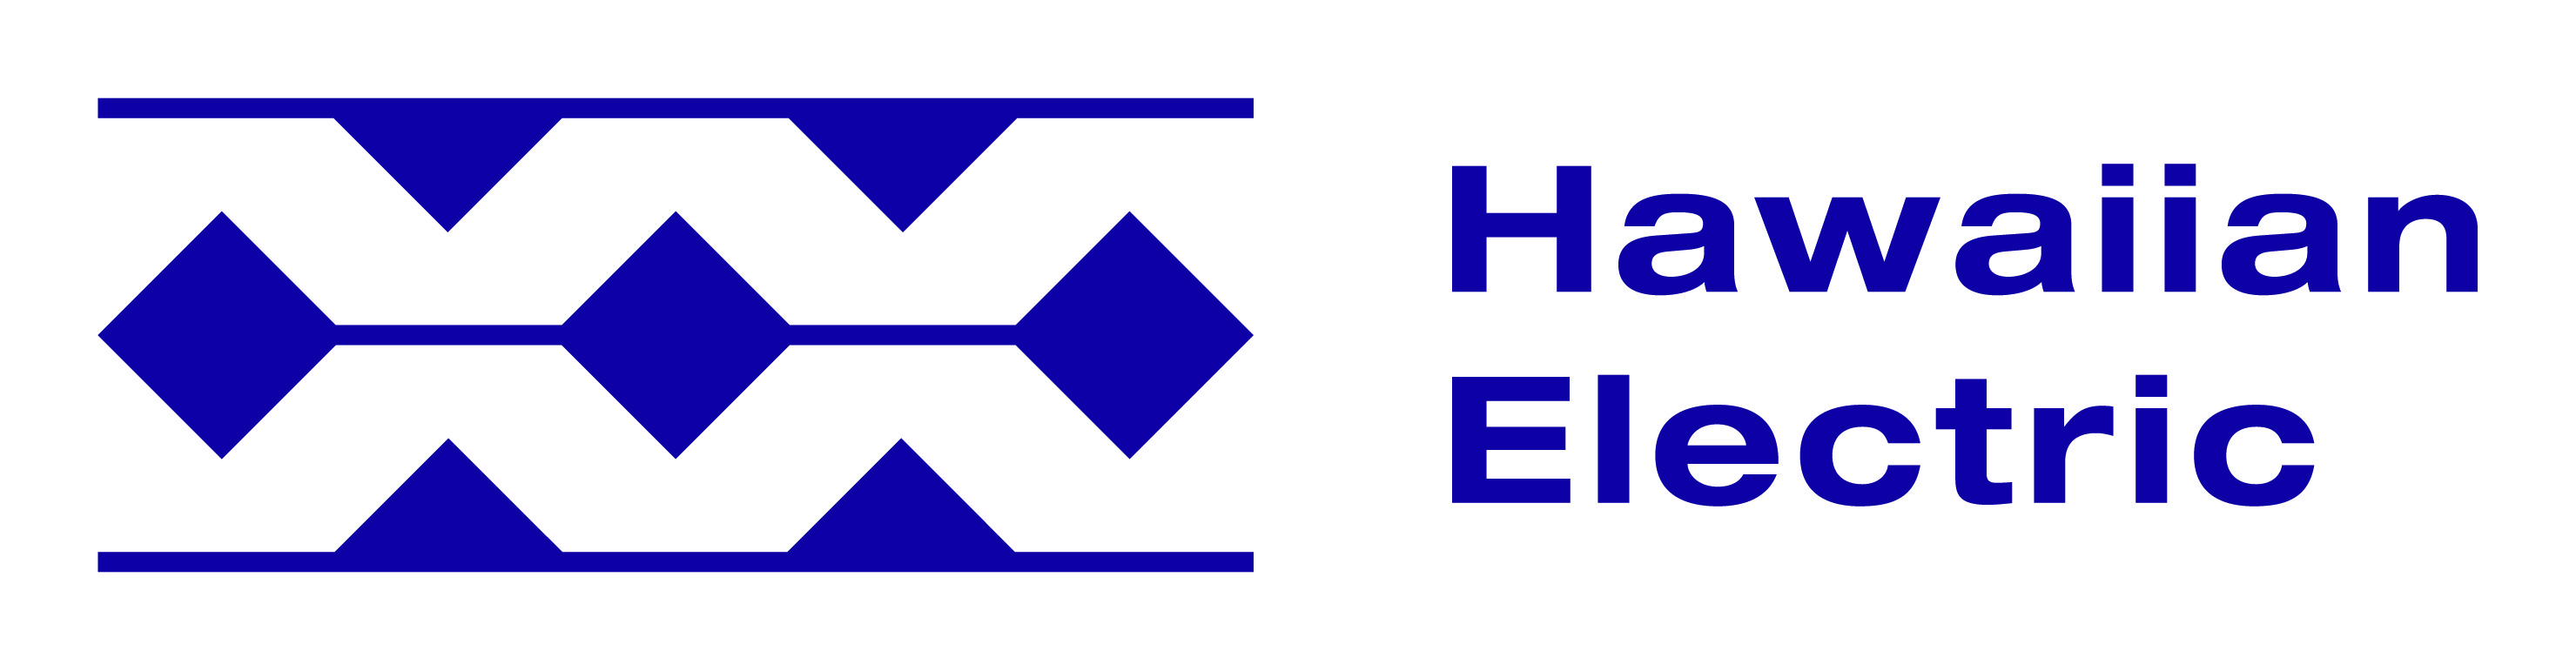 F- Hawaiian Electric